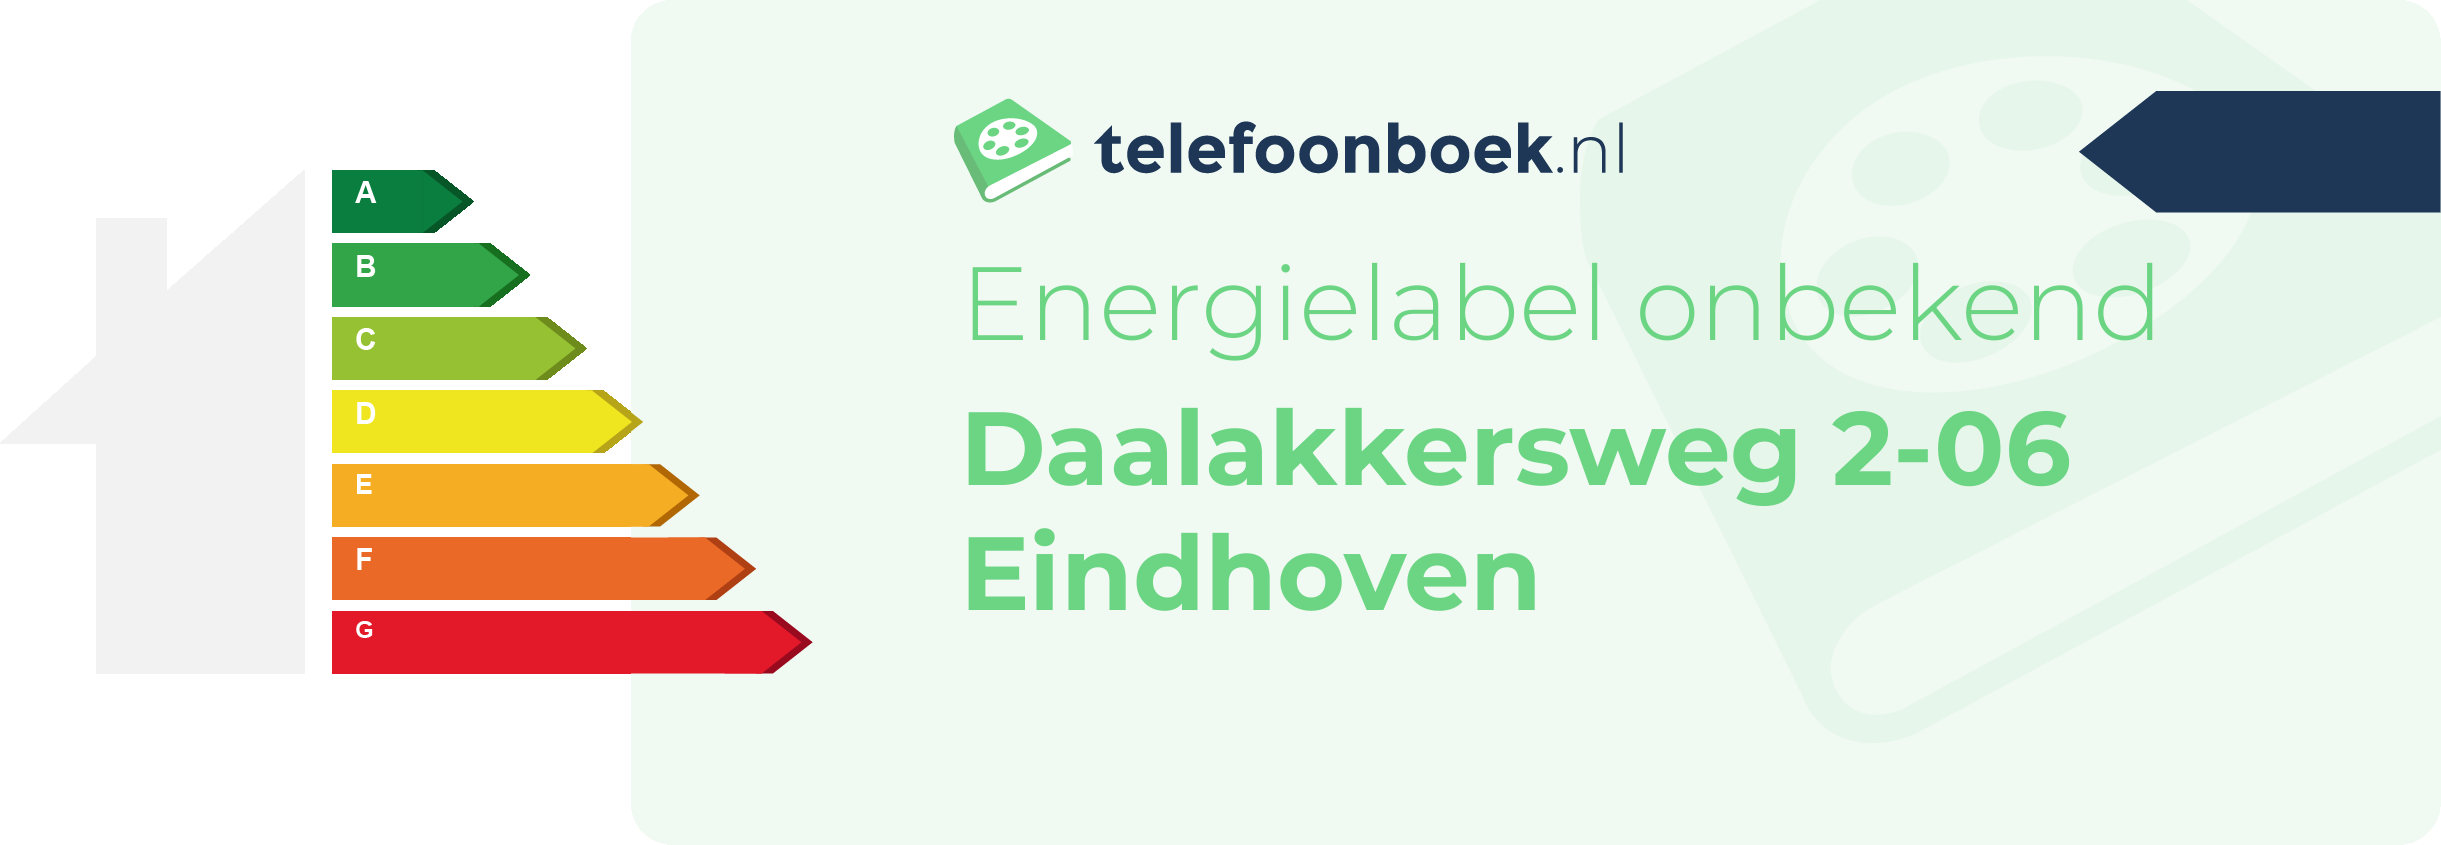 Energielabel Daalakkersweg 2-06 Eindhoven